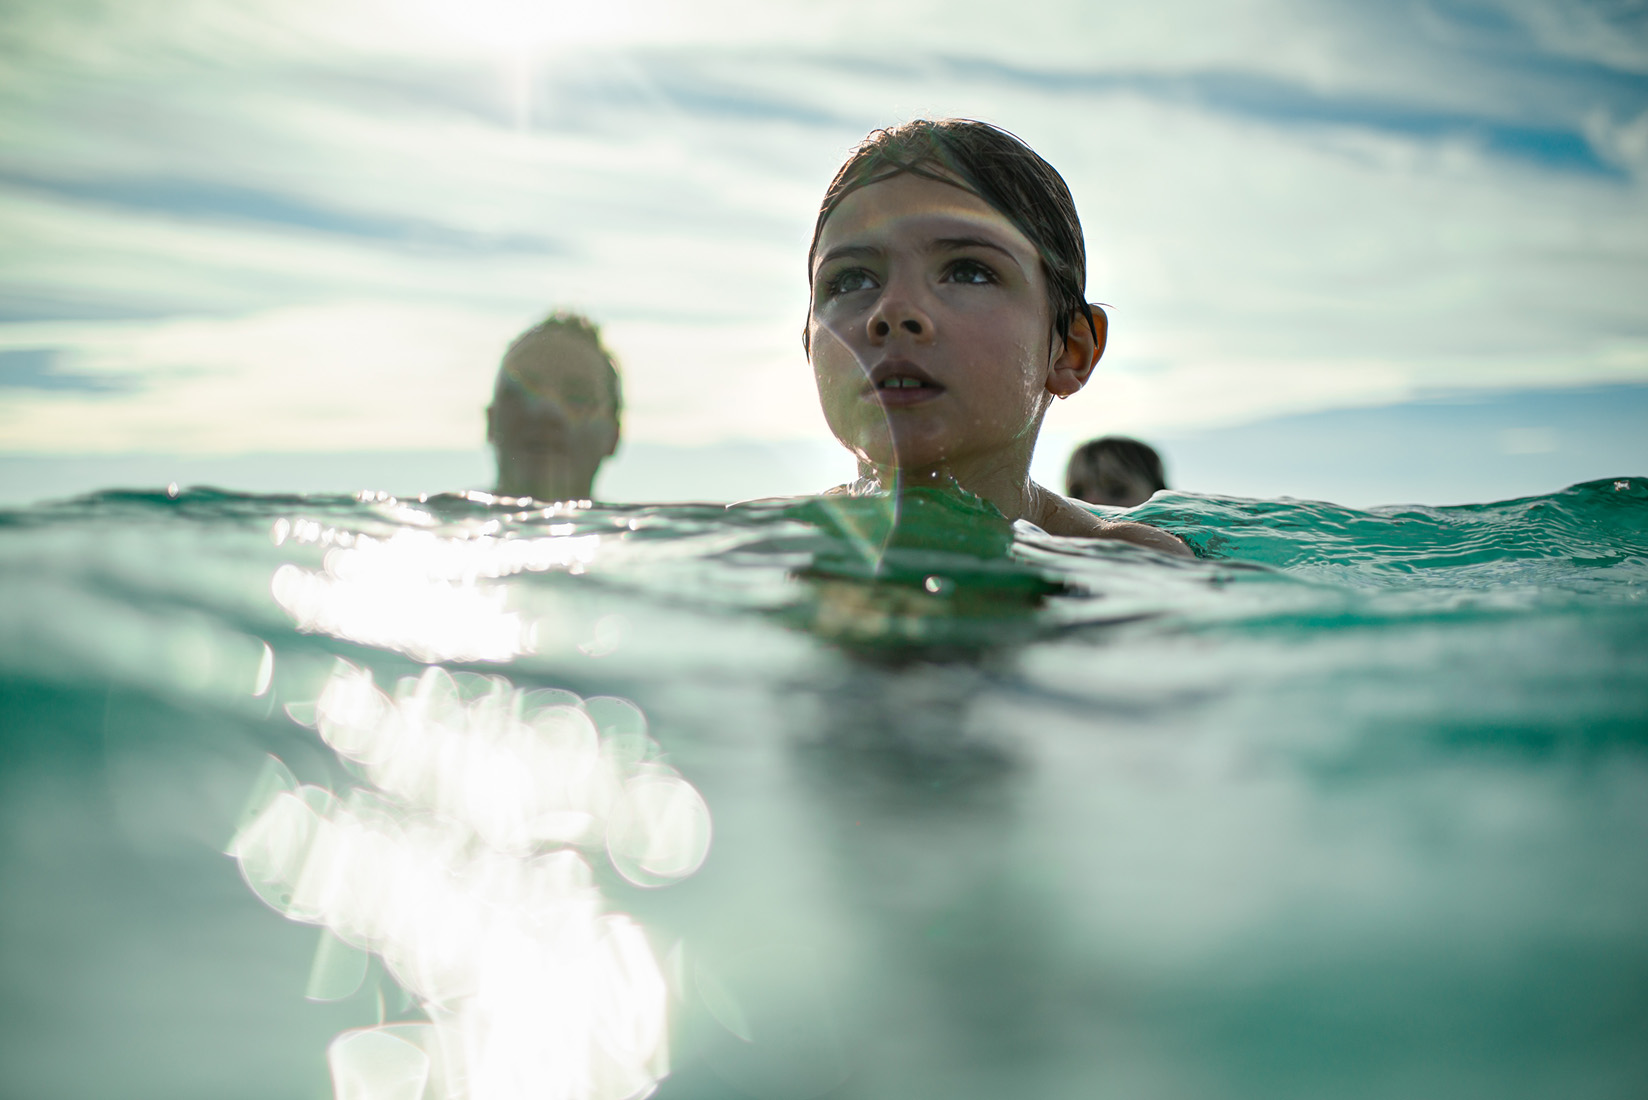 KKRiddle-Lifestyle Travel Children Underwater Photography